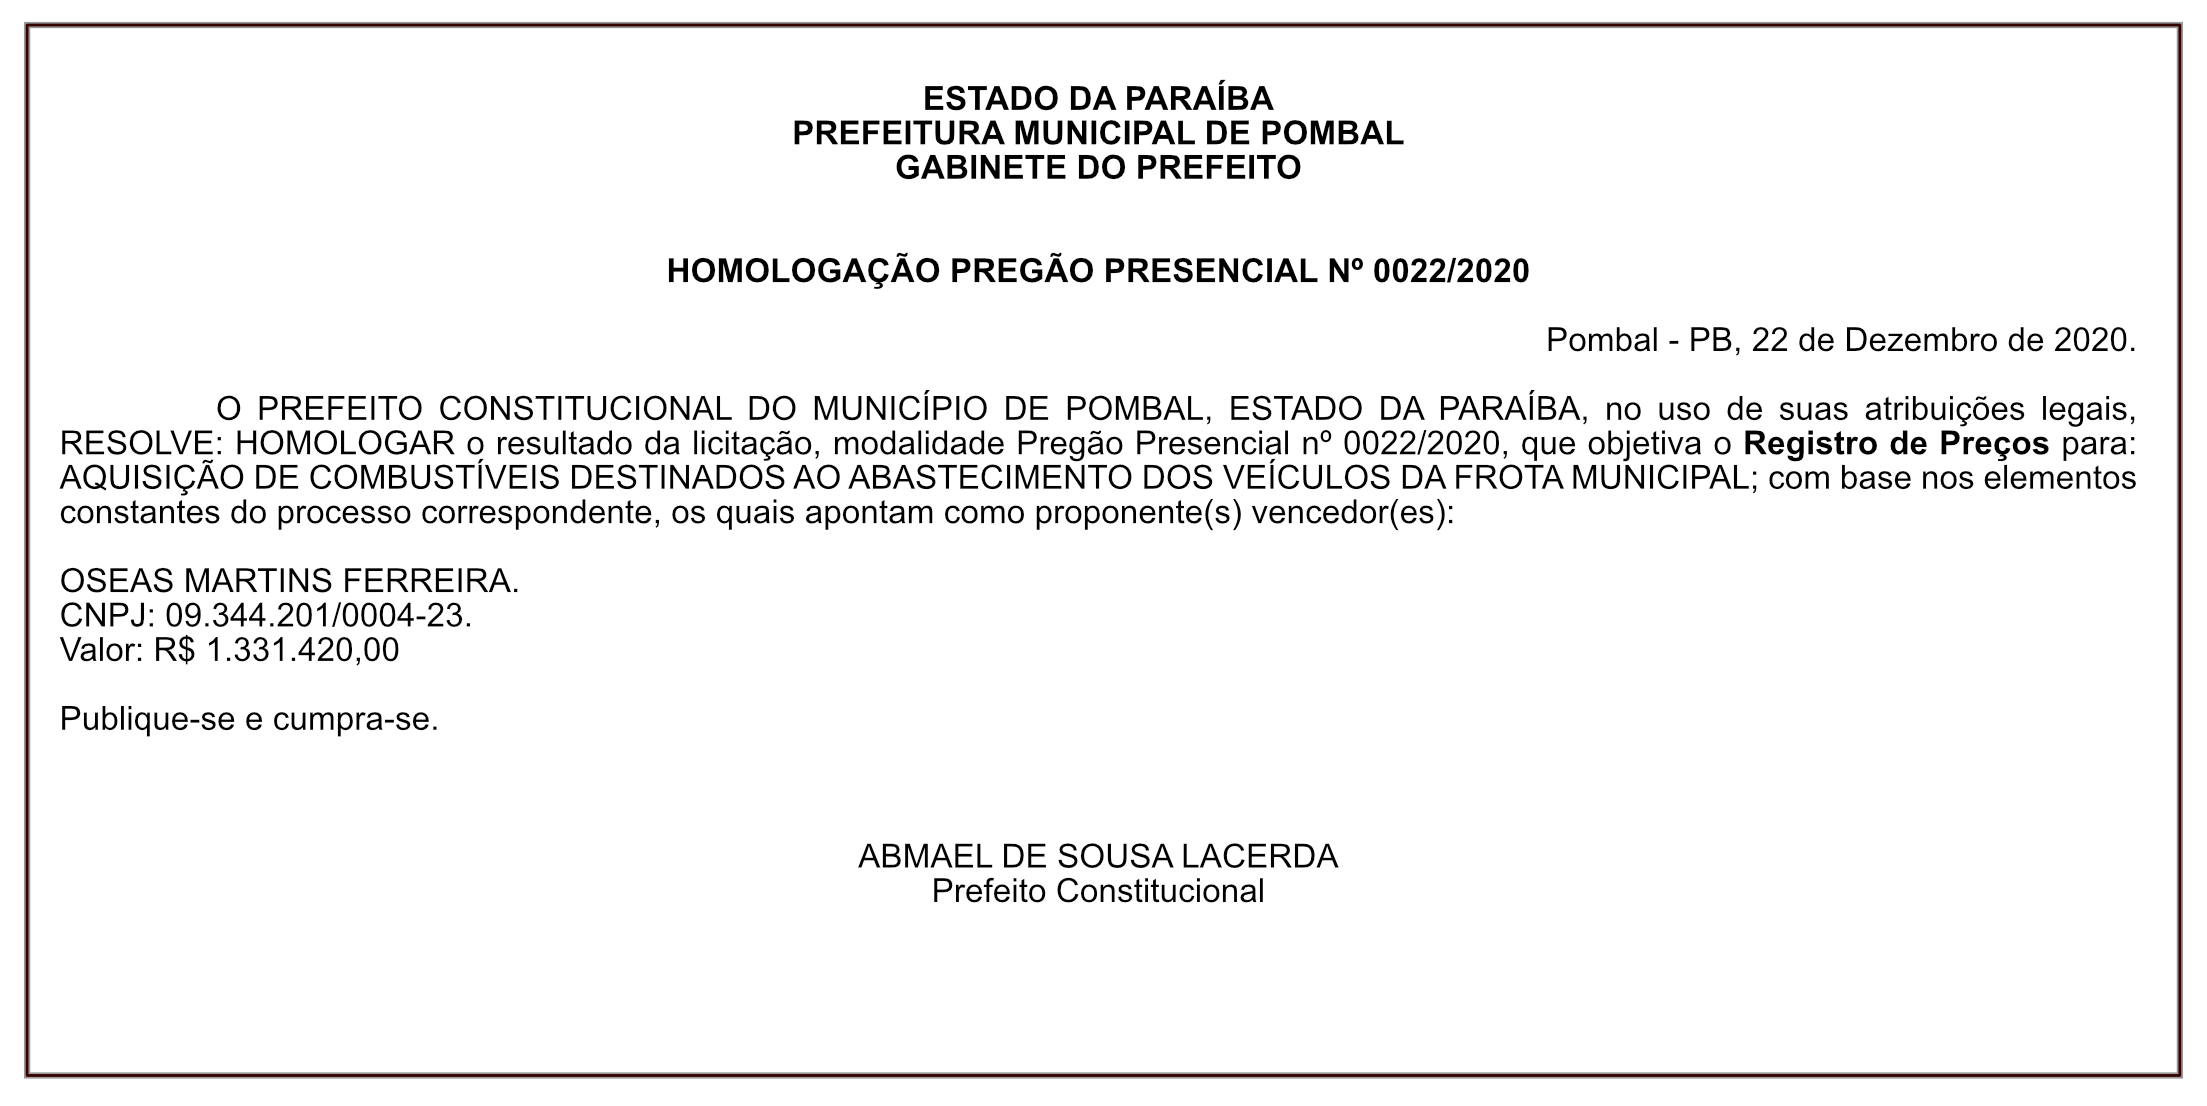 PREFEITURA MUNICIPAL DE POMBAL – HOMOLOGAÇÃO PREGÃO PRESENCIAL Nº 0022/2020